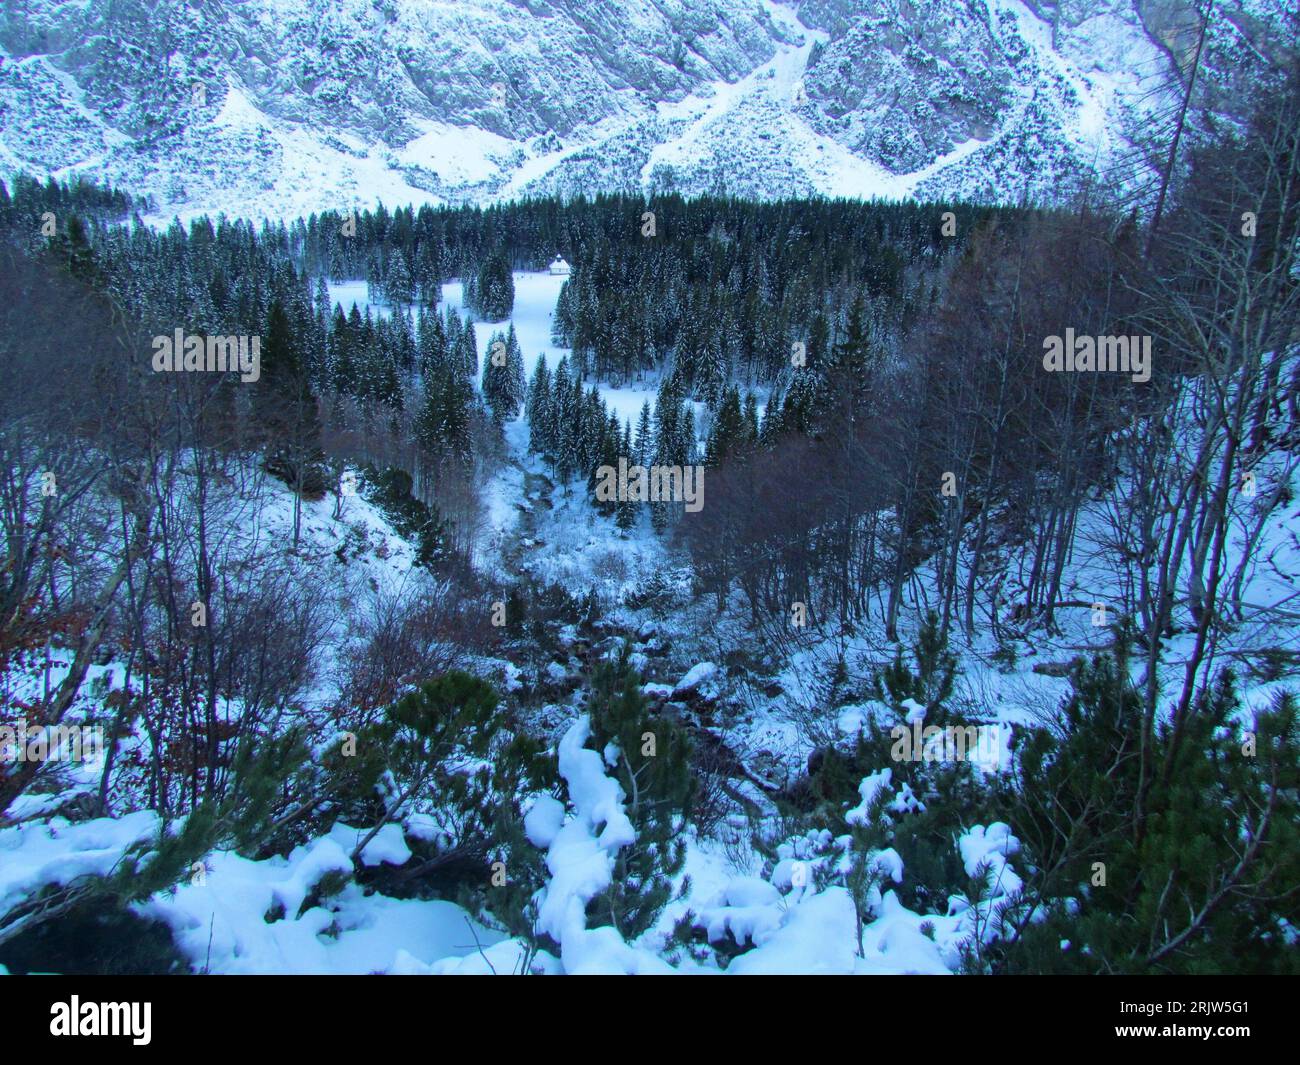 Vista invernale del torrente roccioso di Nadiza nella valle di Tamar nelle alpi Giulie nella regione di Gorenjska in Slovenia, con la foresta di conifere che copre il fondo valle Foto Stock